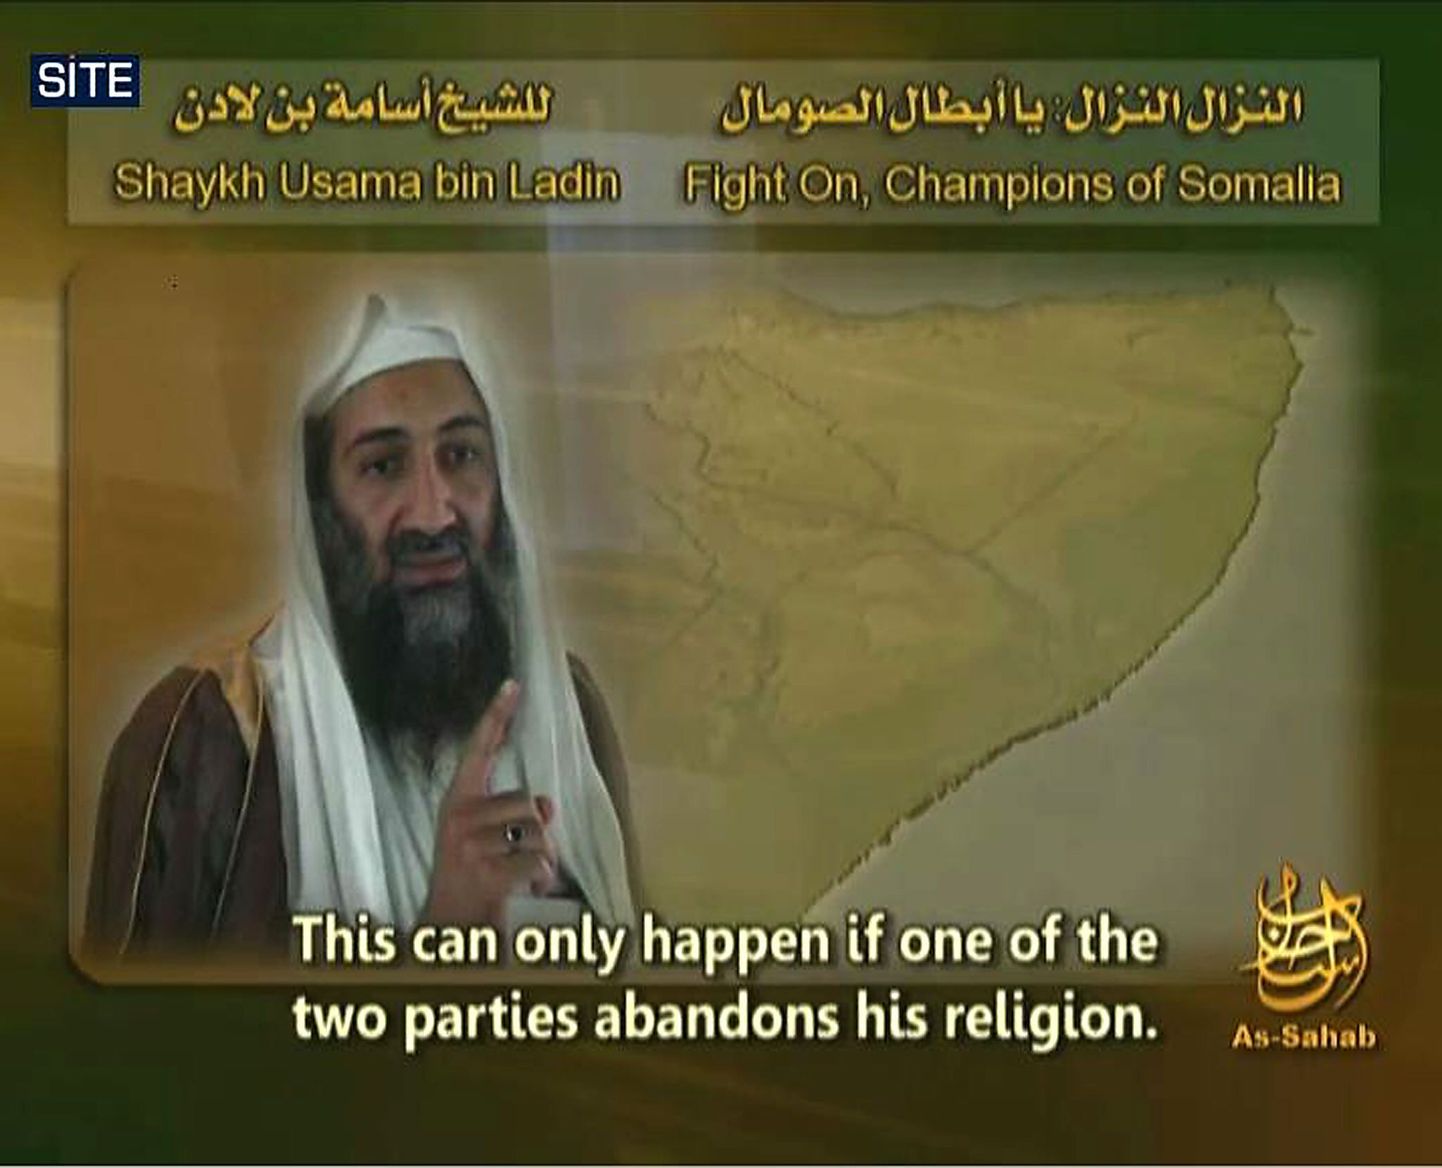 Al-Qaeda liider Osama bin Laden.